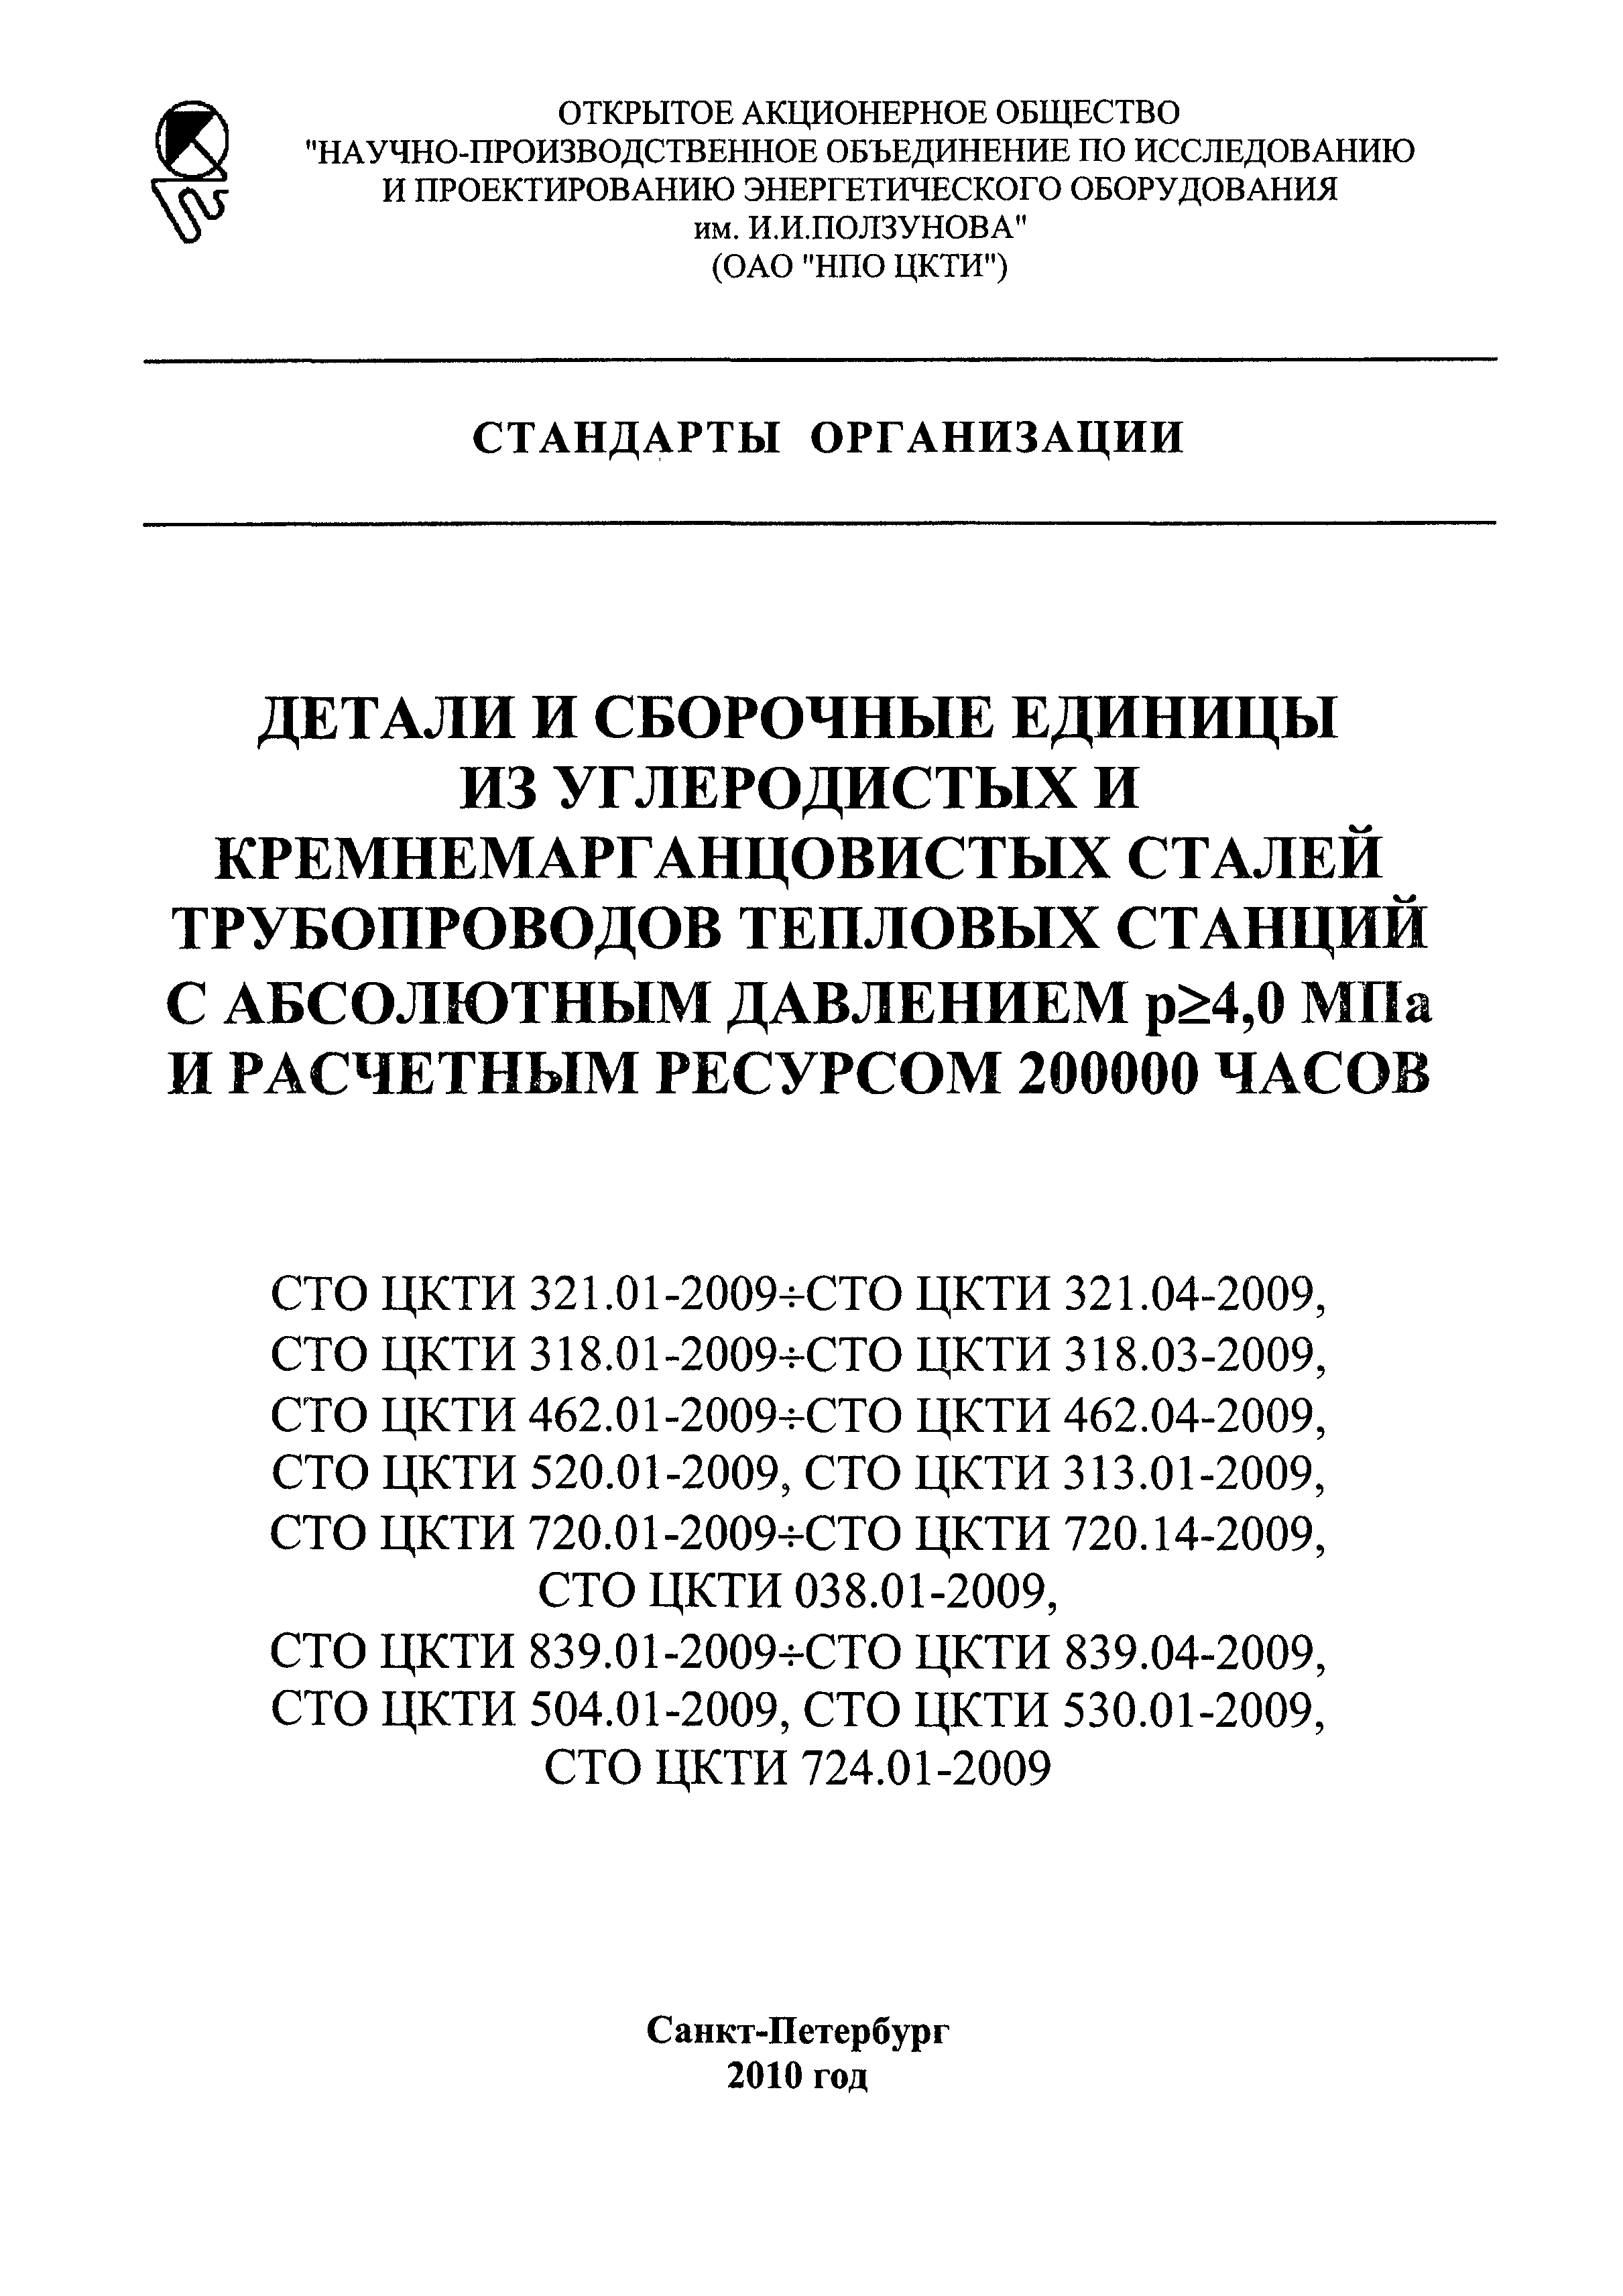 СТО ЦКТИ 720.08-2009